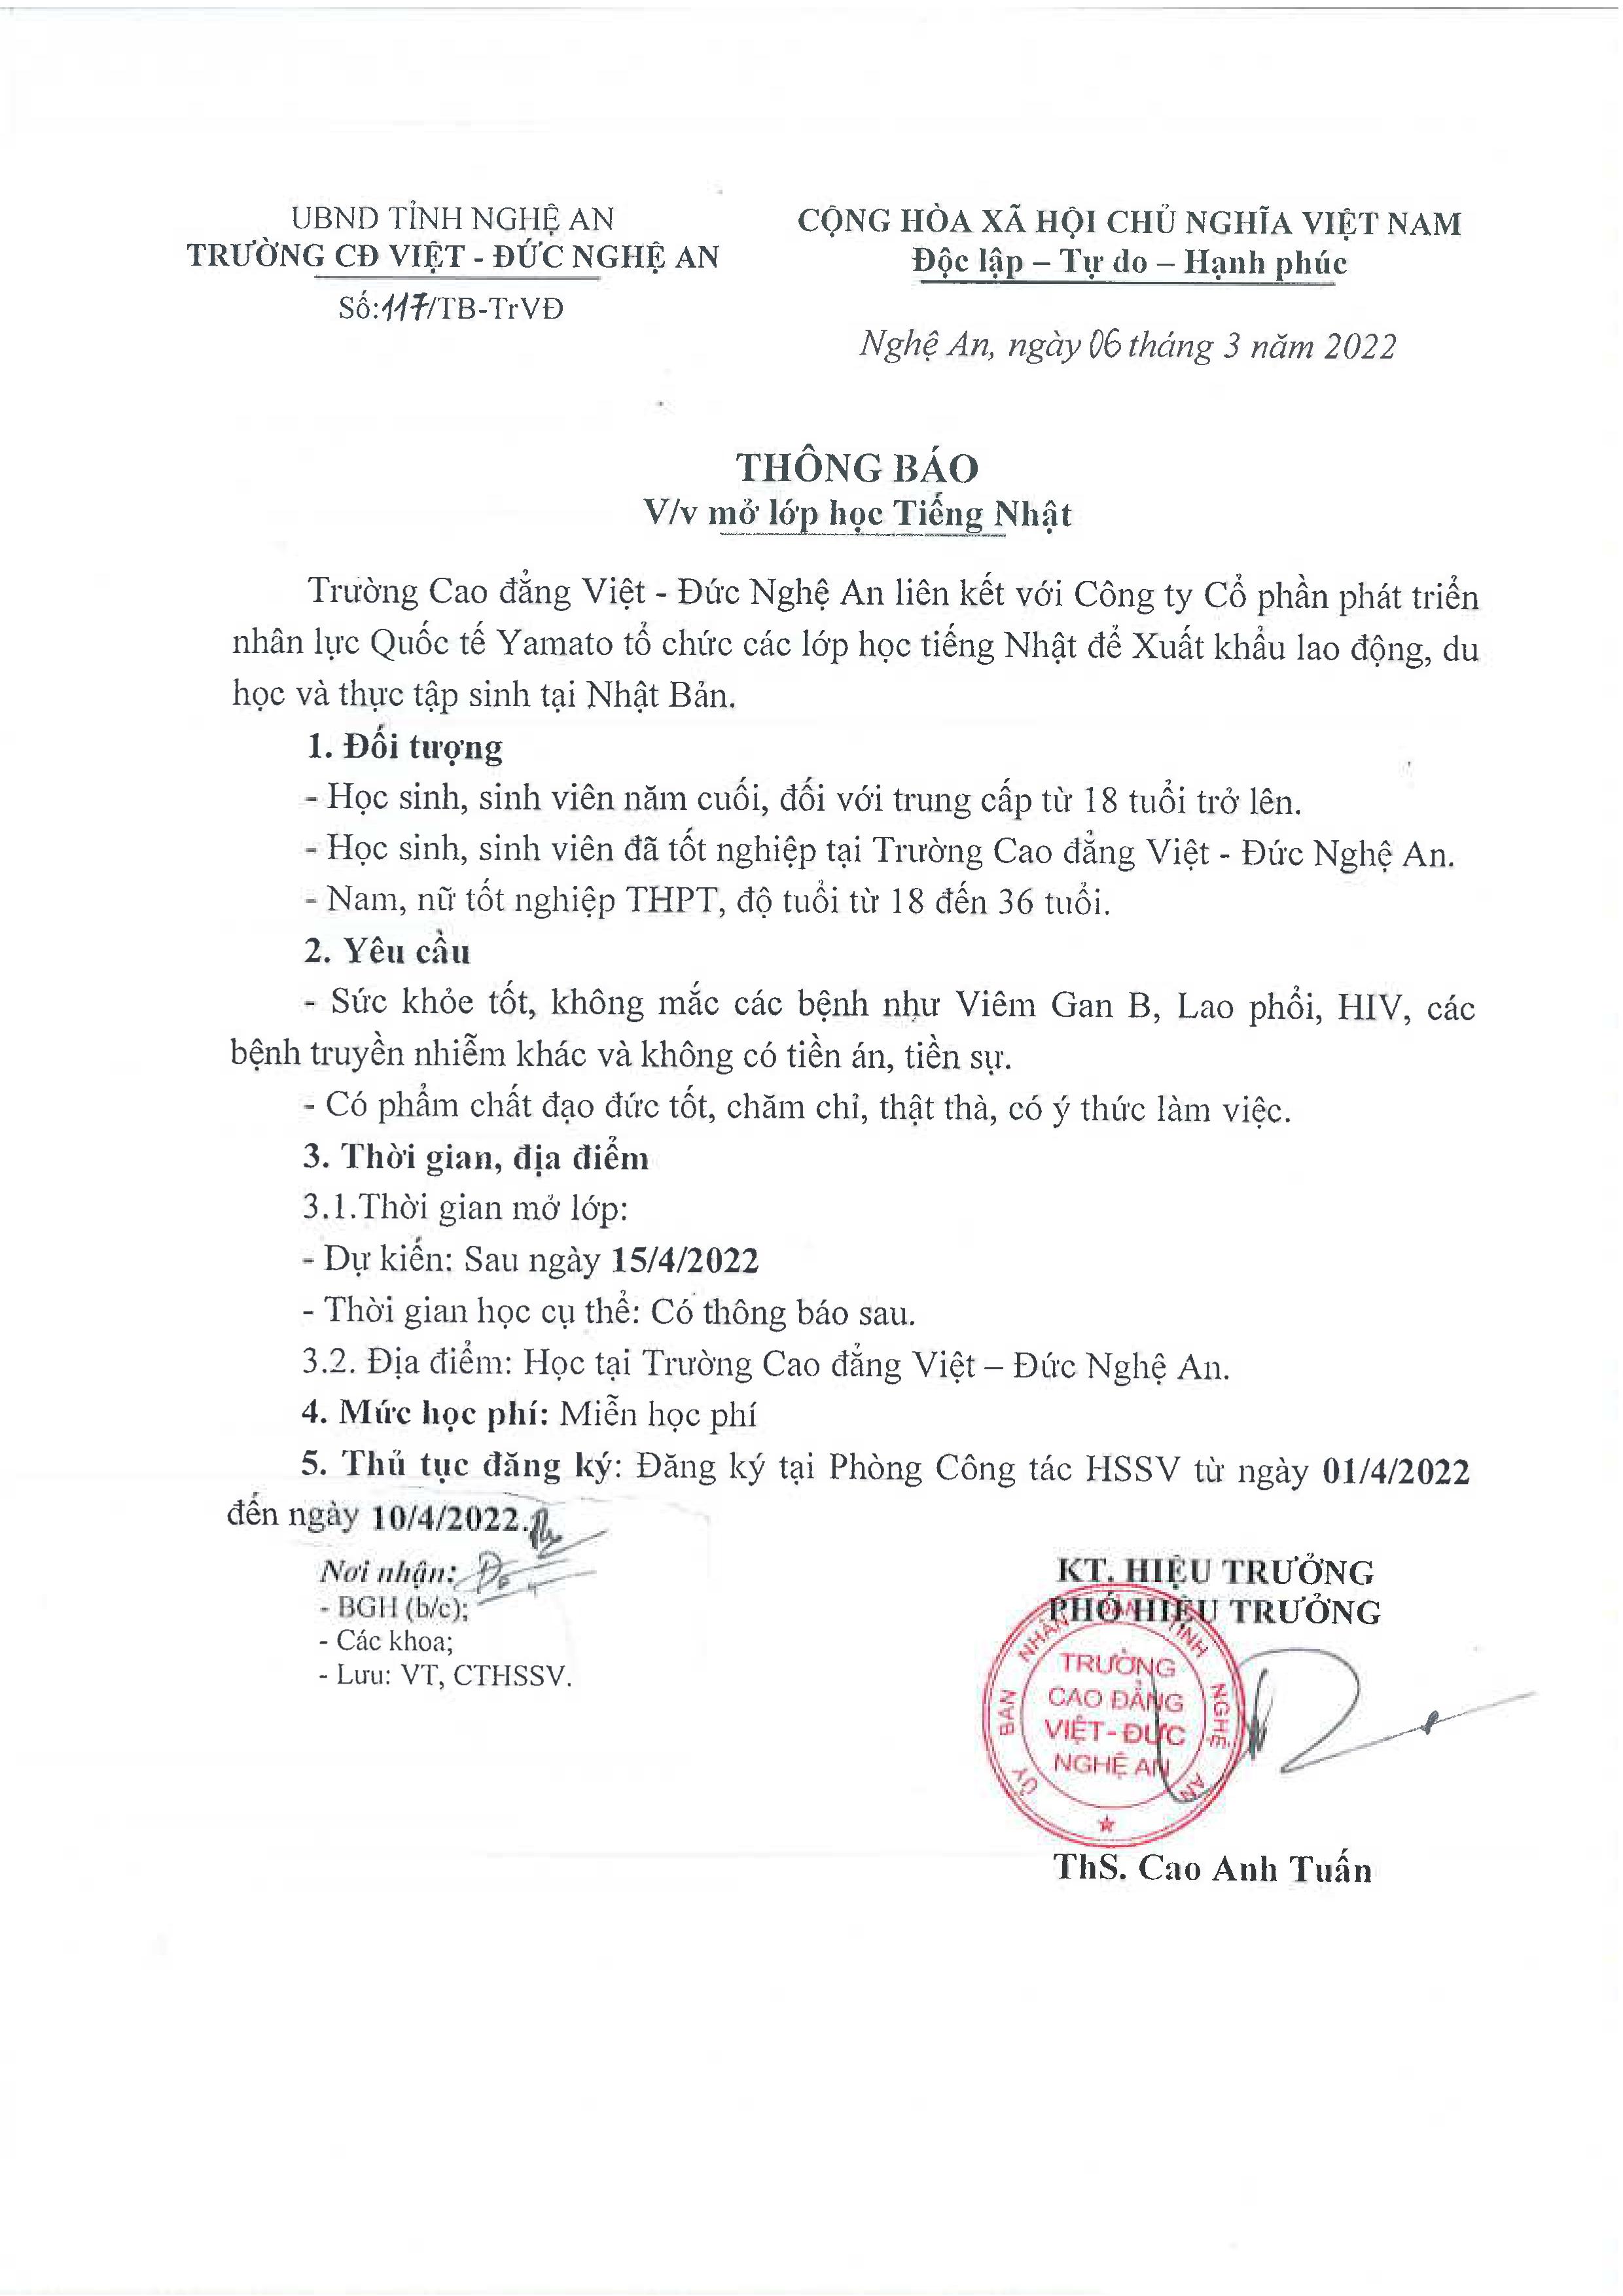 Thông báo số 117/TB-Tr.VĐ ngày 06/3/2022 của Trường Cao đẳng Việt - Đức Nghệ An về việc mở lớp học tiếng Nhật